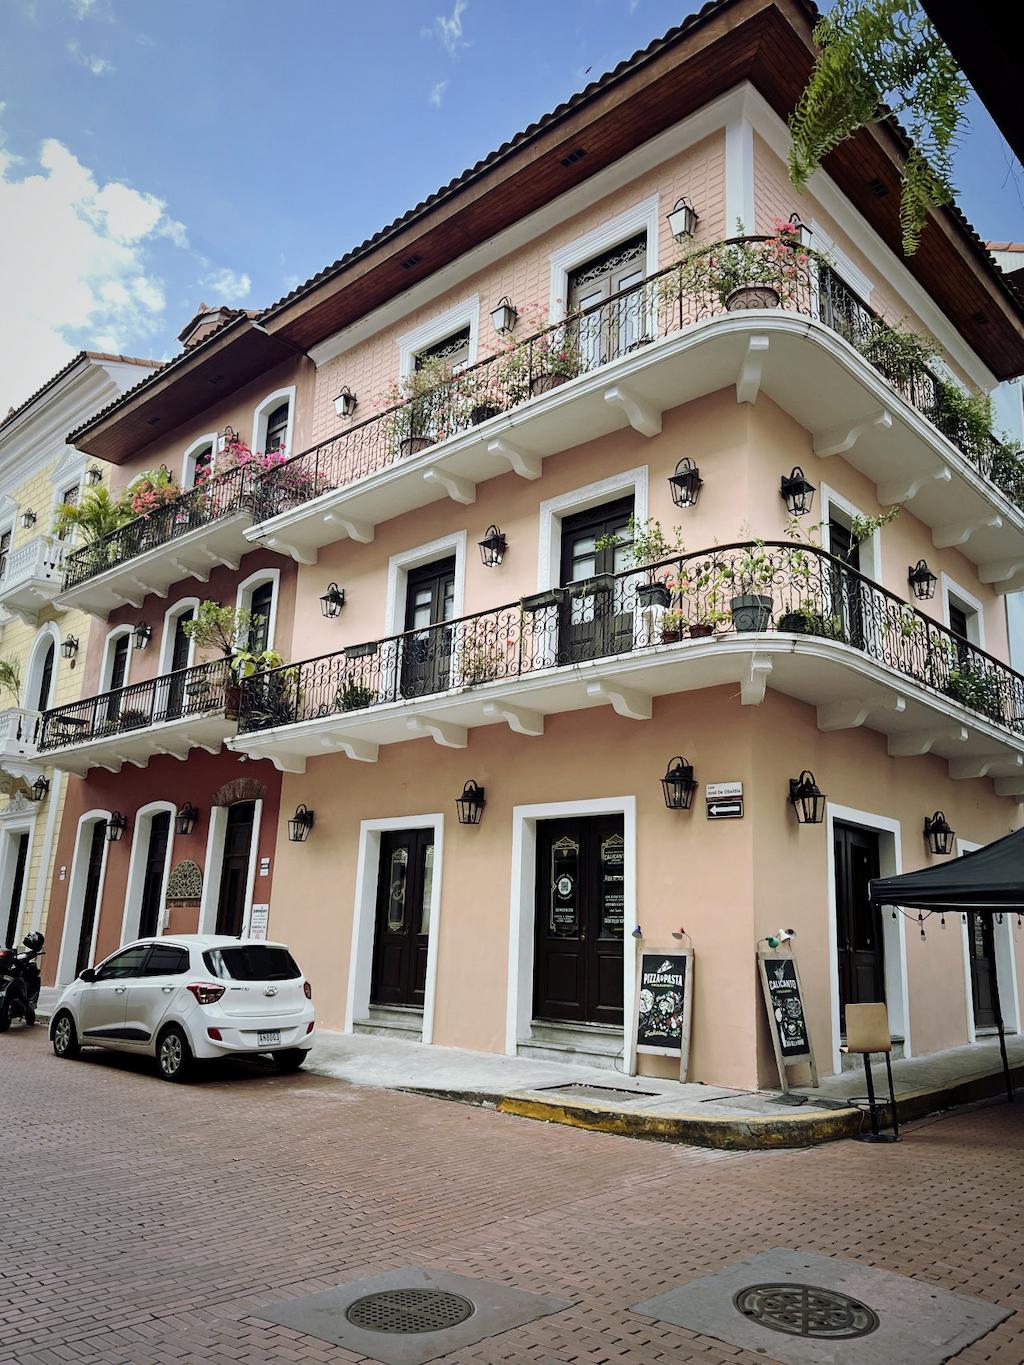 Casco Viejo: Panama Old Town